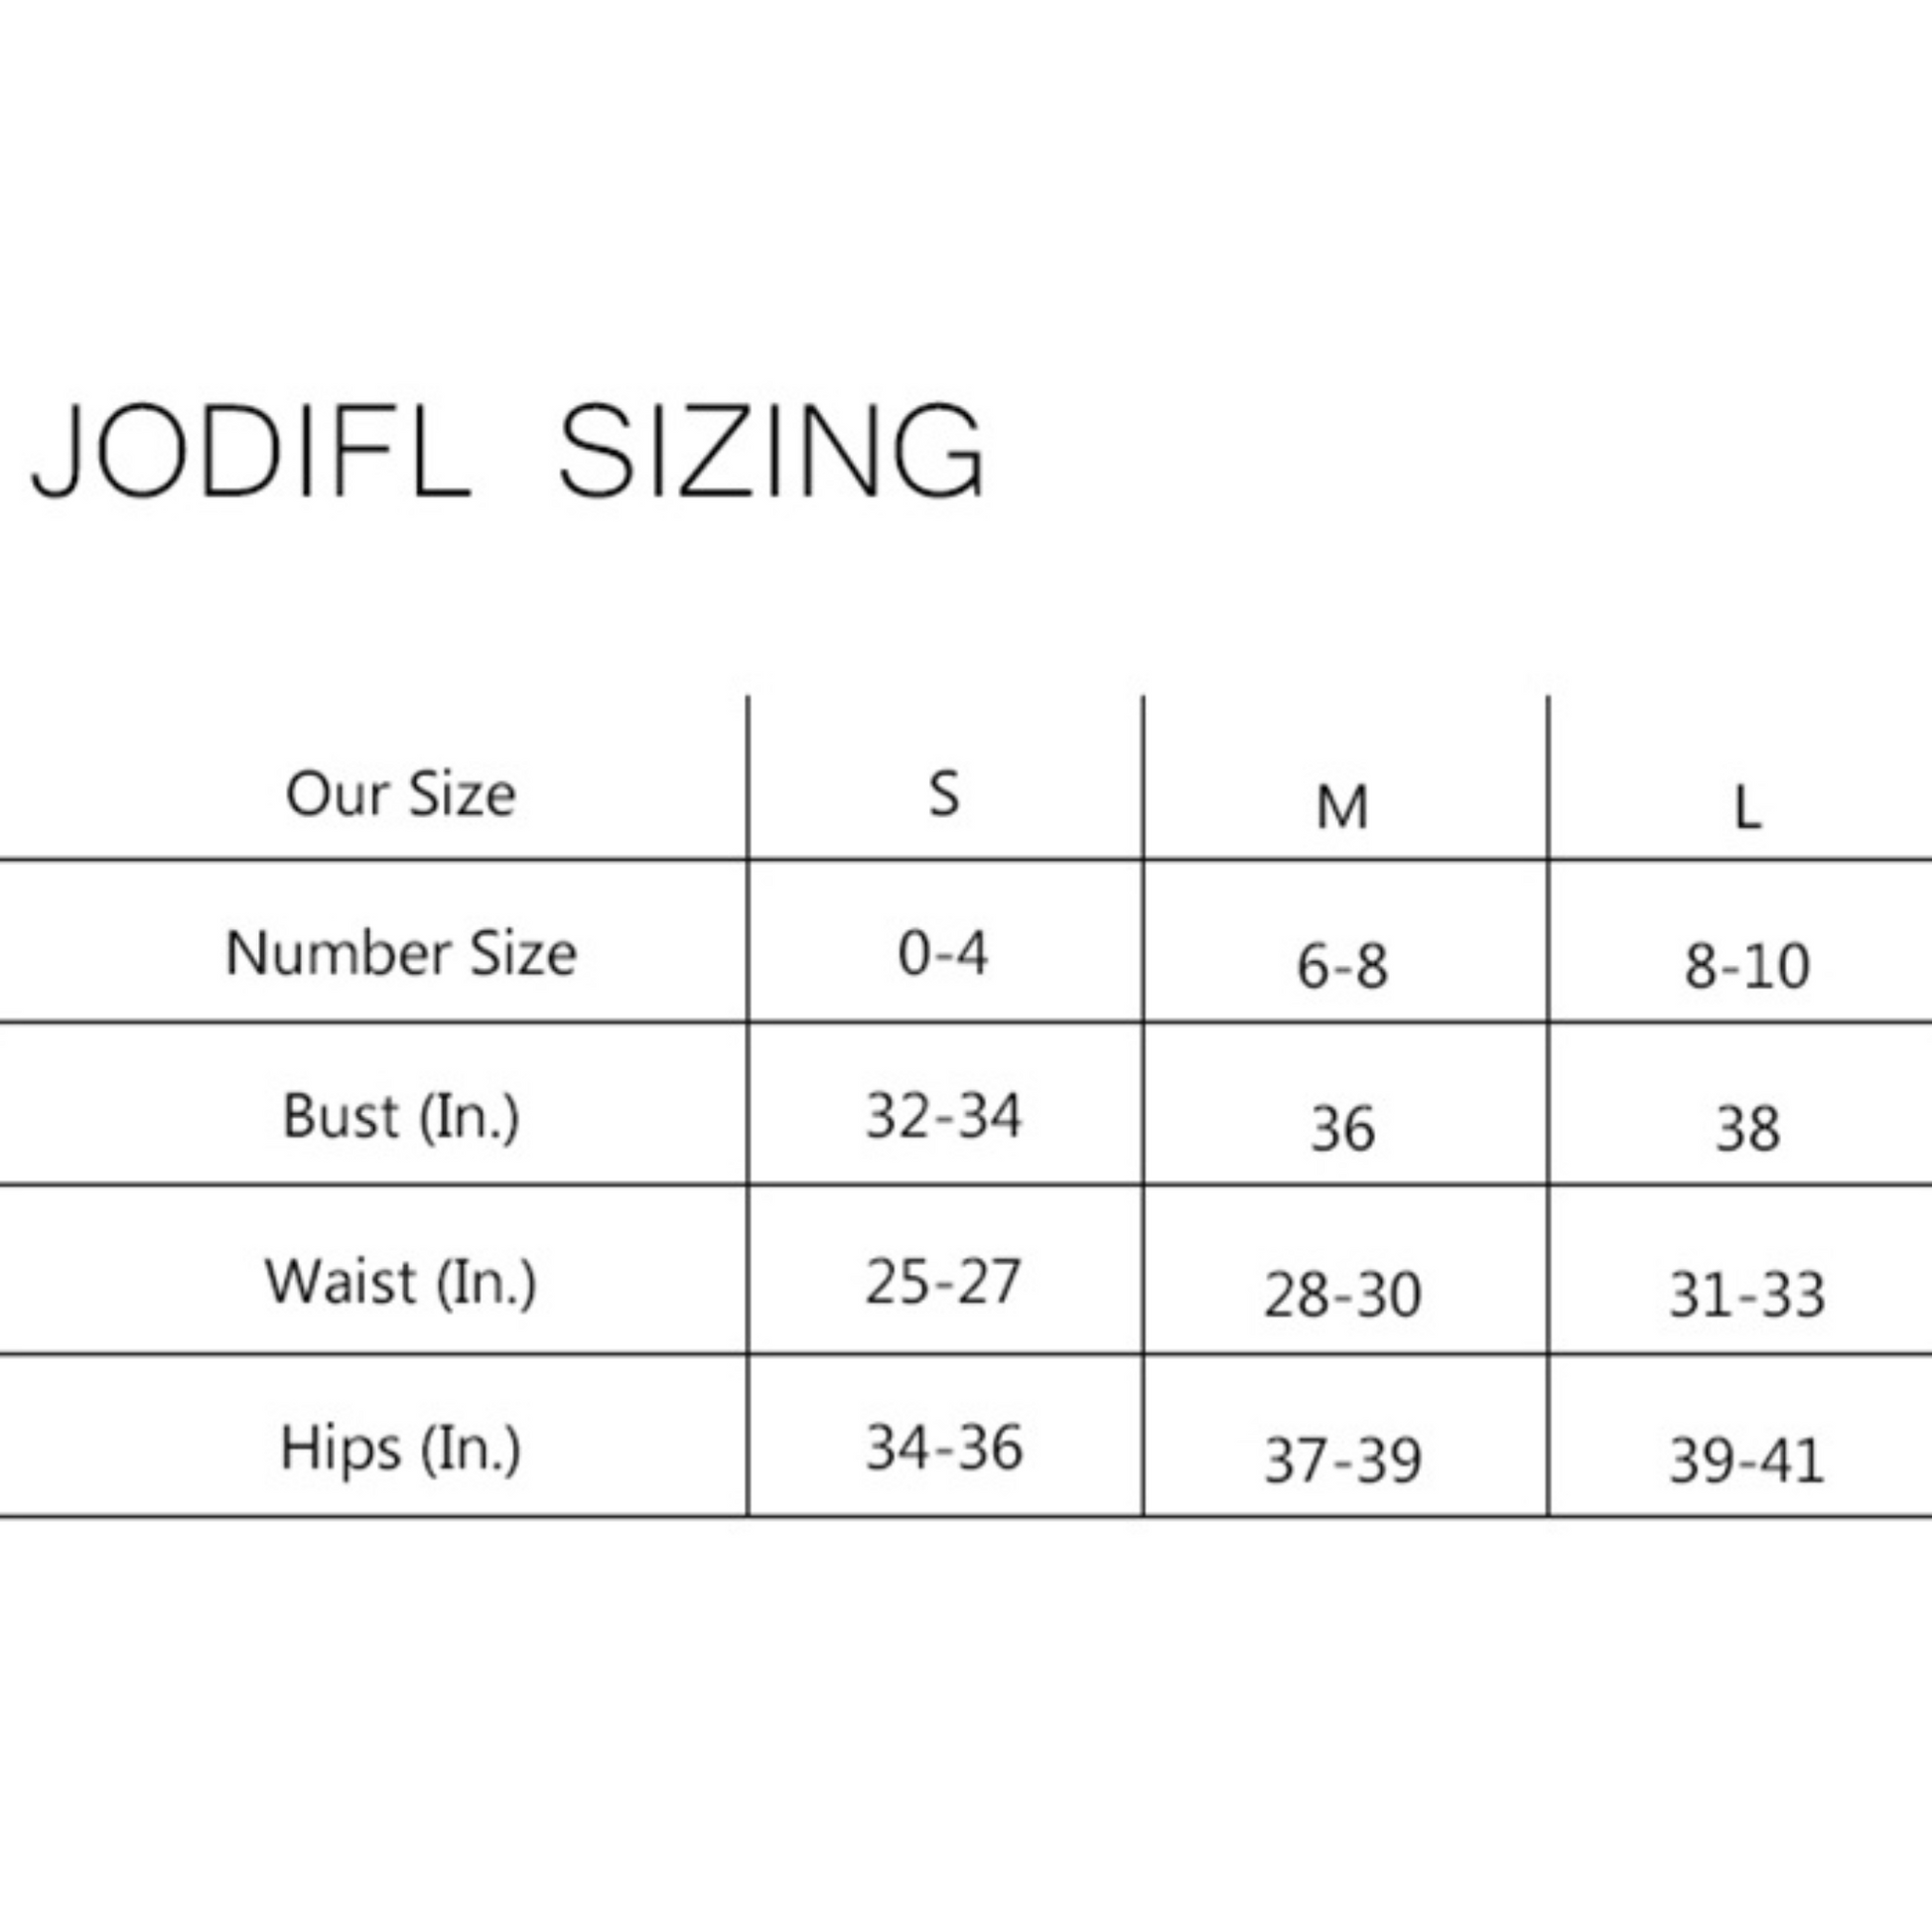 Jodifl size chart